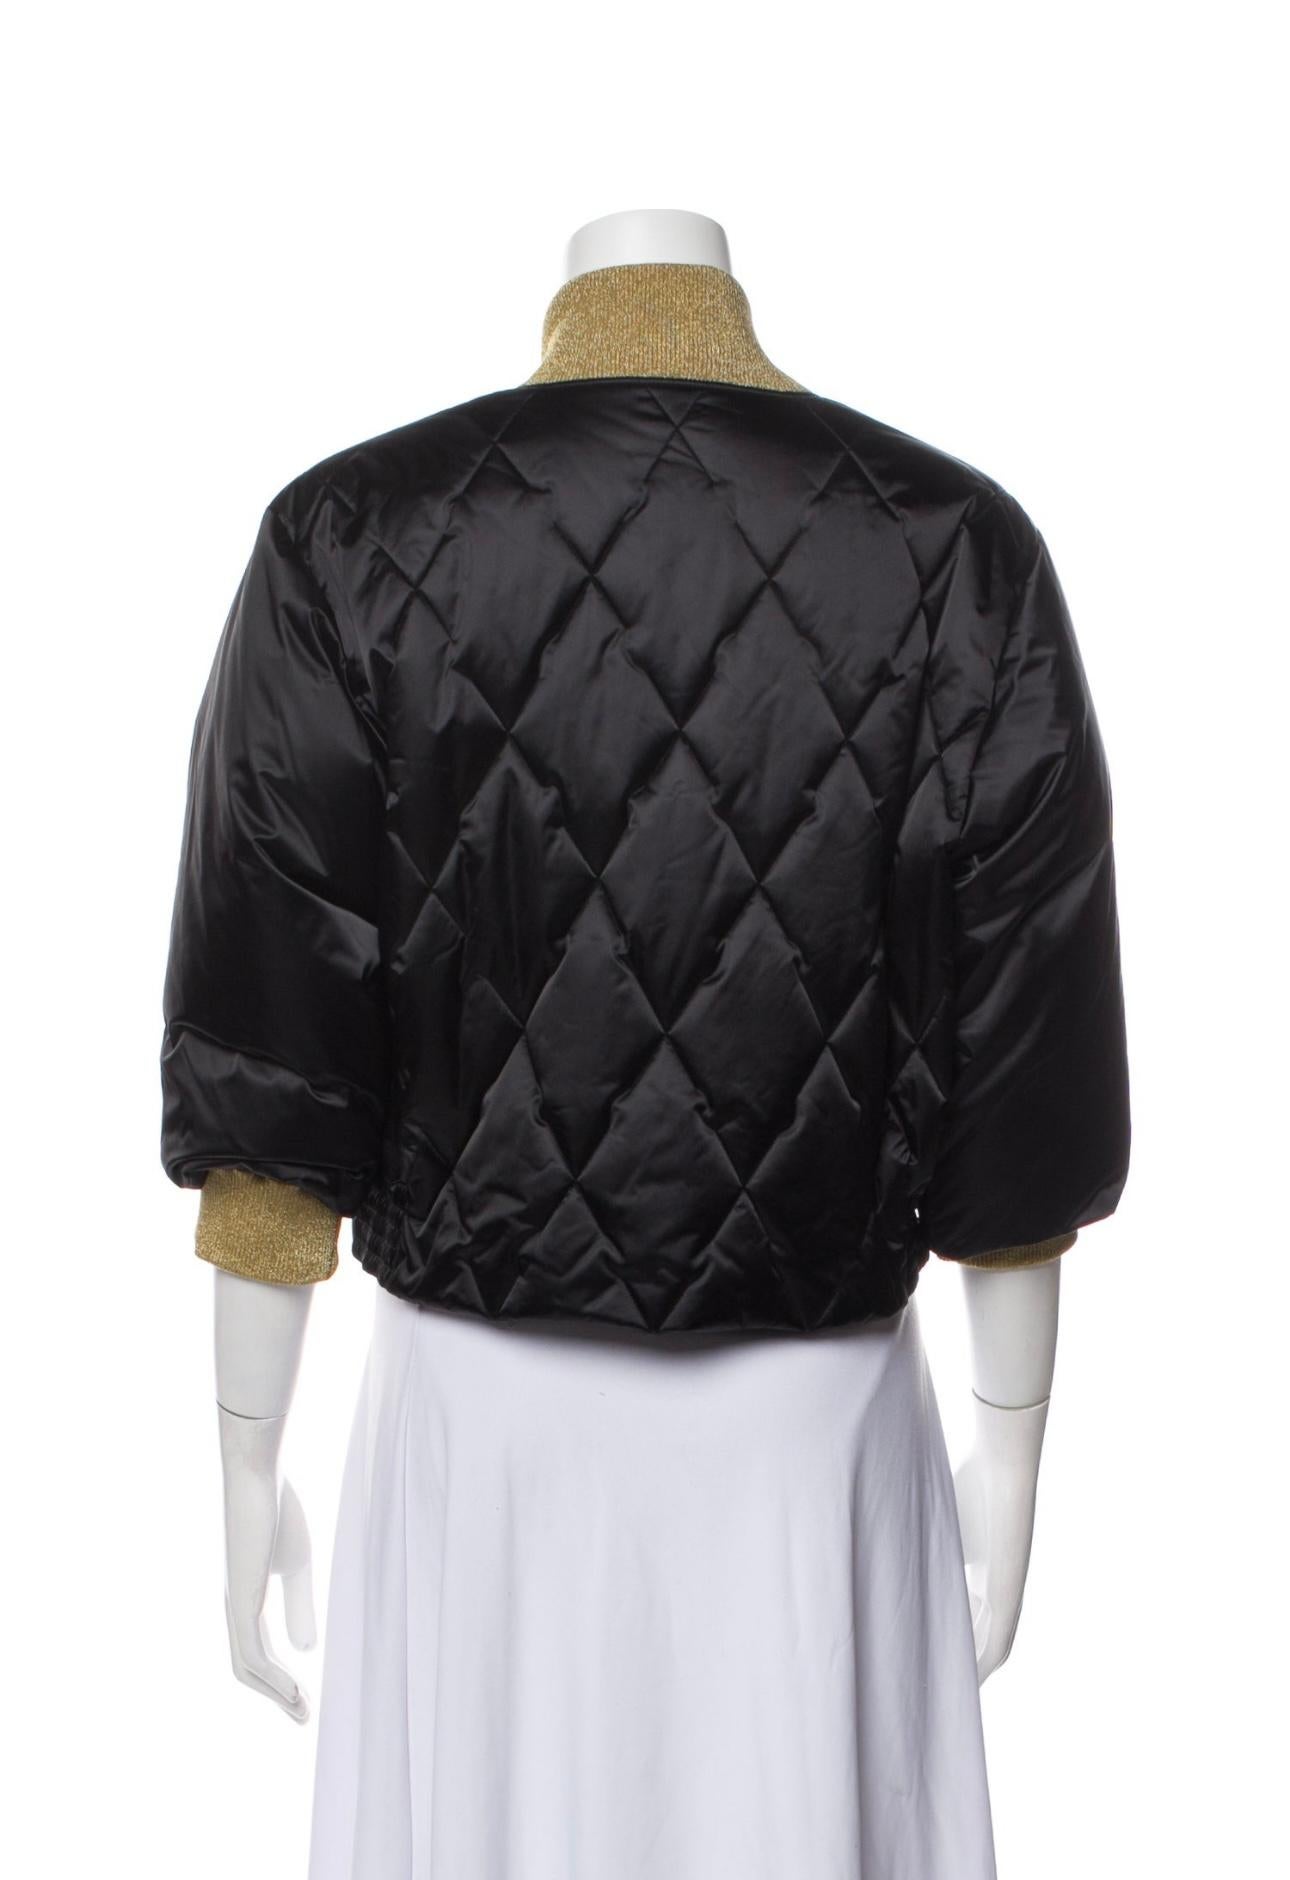 Chanel - Willow Smith - Veste polaire matelassée noire pour la campagne publicitaire en vente 8